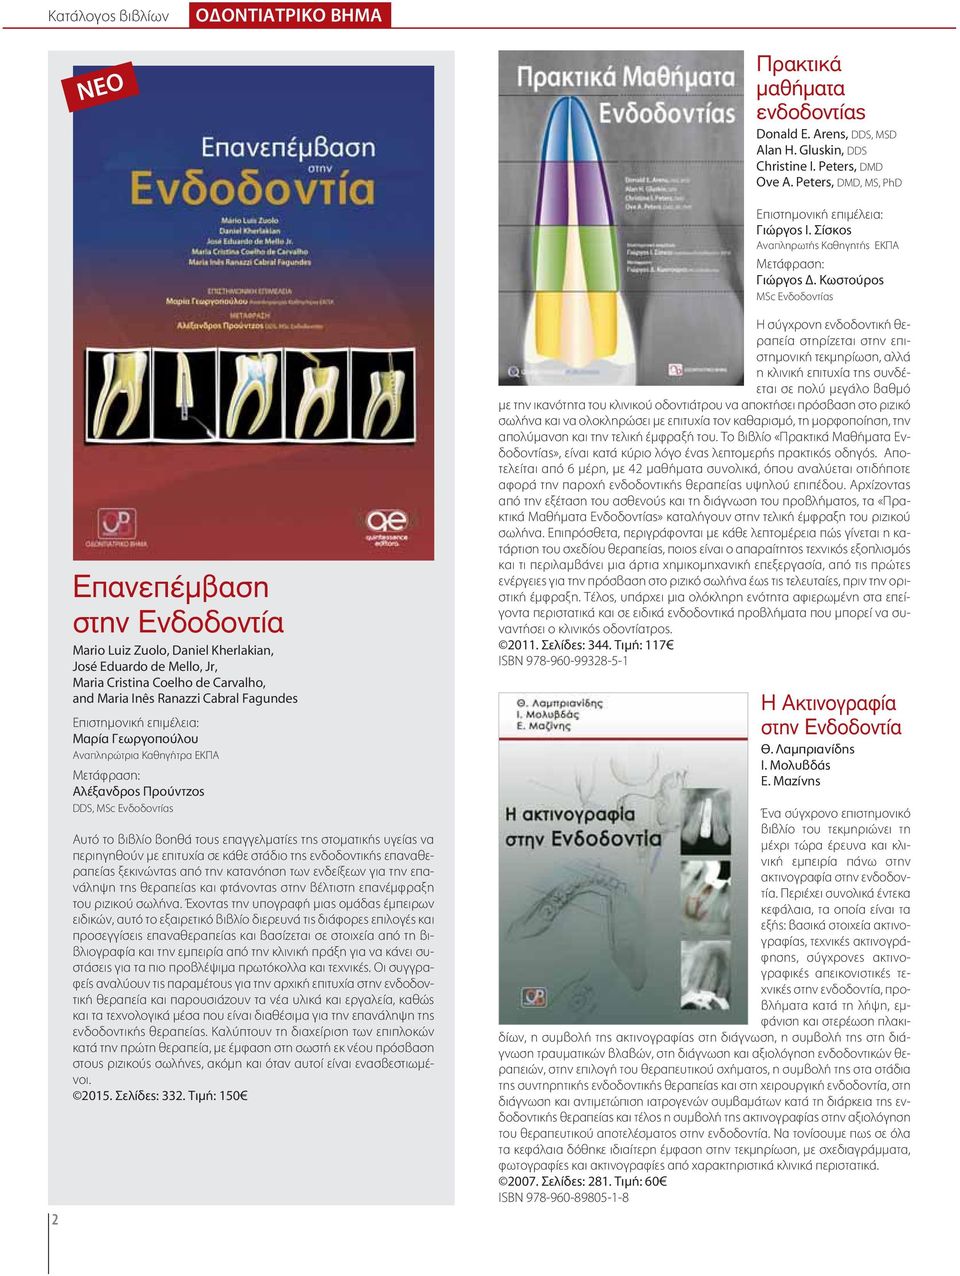 Επιστημονική επιμέλεια: Μαρία Γεωργοπούλου Αναπληρώτρια Καθηγήτρα ΕΚΠΑ Μετάφραση: Αλέξανδρος Προύντζος DDS, MSc Eνδοδοντίας Αυτό το βιβλίο βοηθά τους επαγγελματίες της στοματικής υγείας να